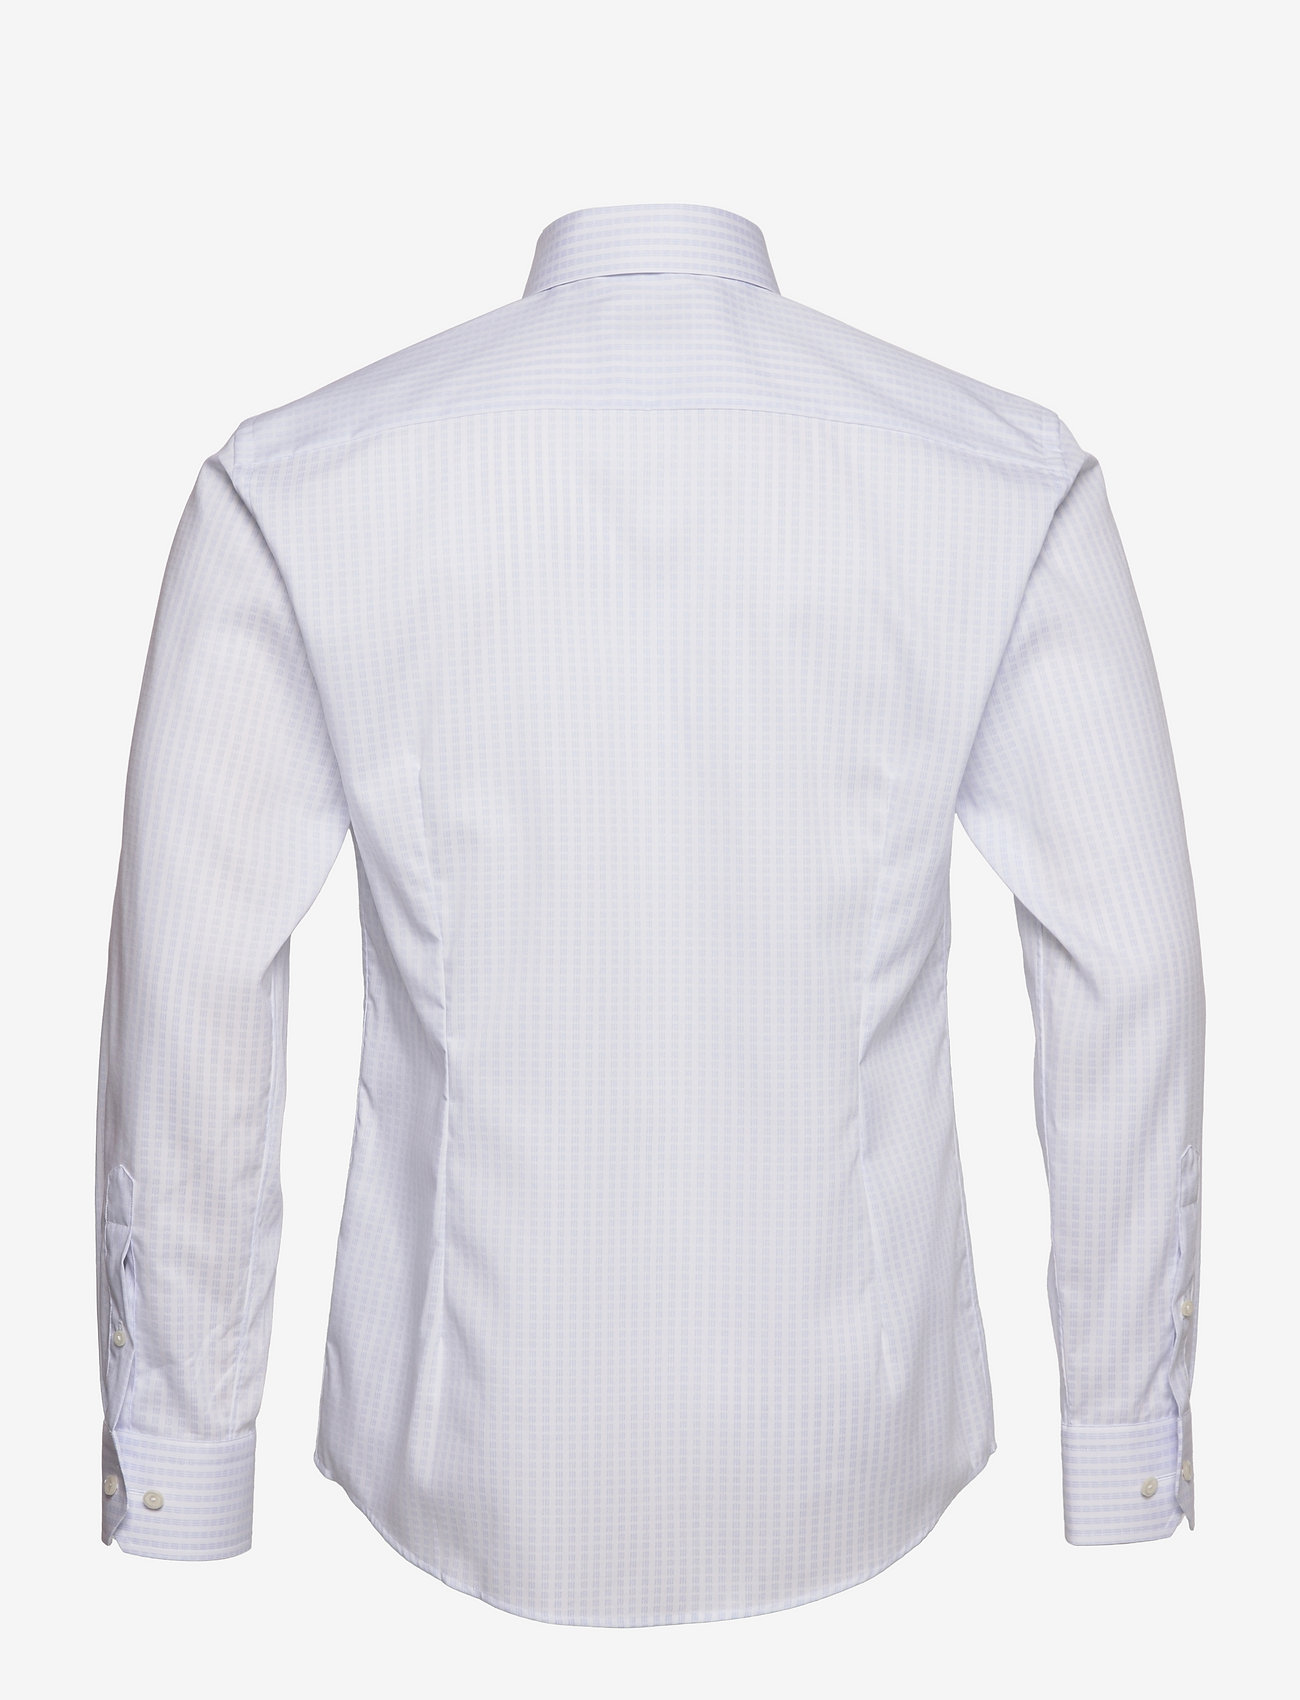 Eton - Men's shirt: Business  Twill - basic-hemden - light blue - 1